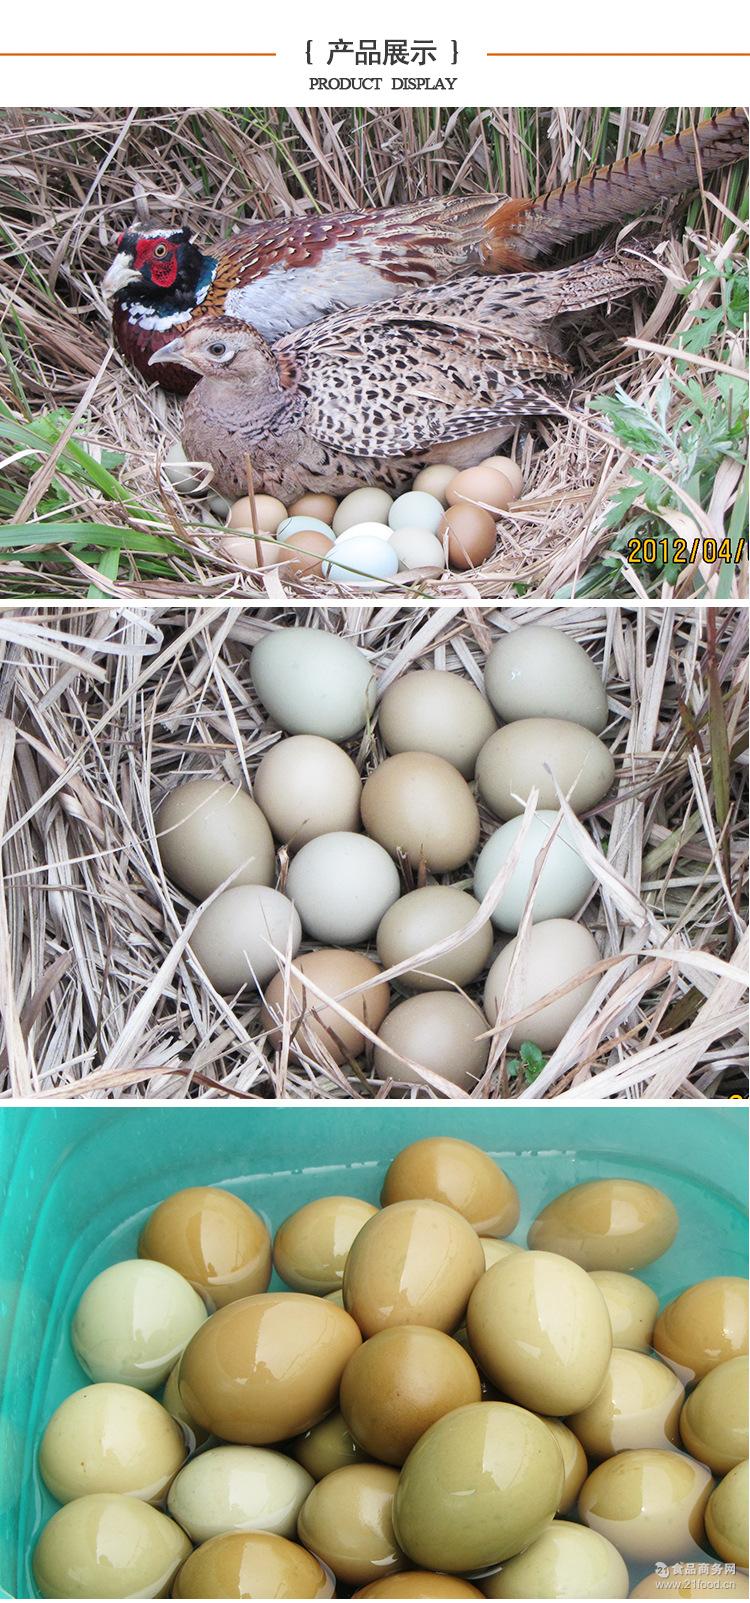 纯正宗七彩野鸡蛋批发 新鲜野鸡蛋生态散养野山鸡蛋供应批发